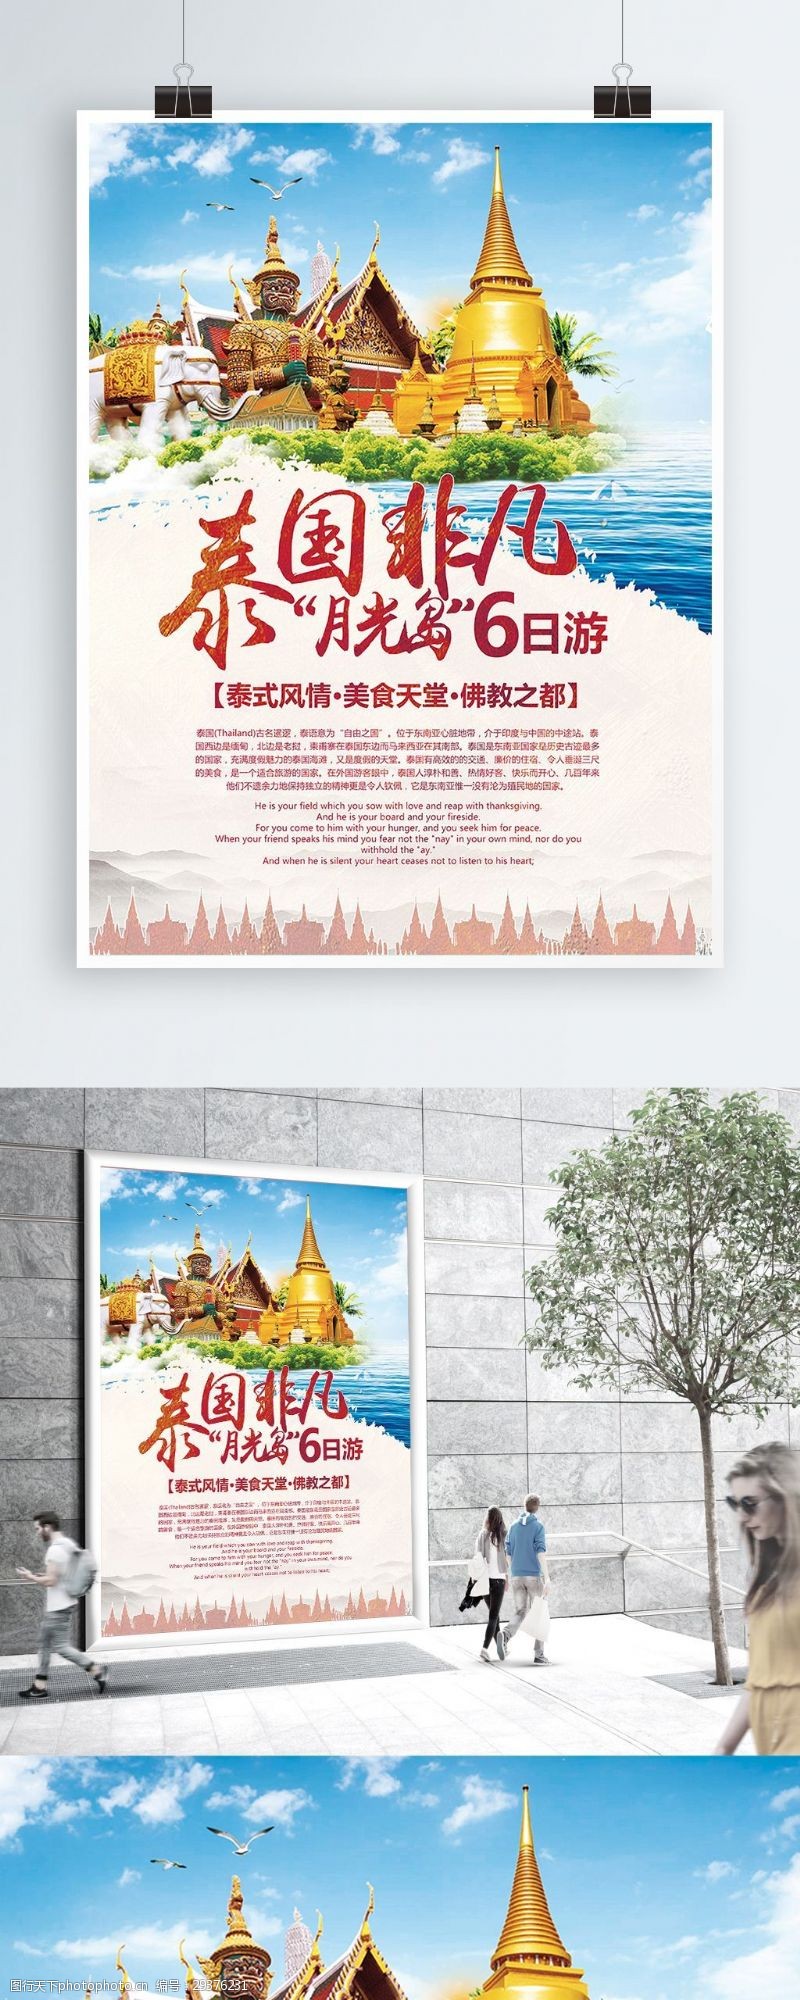 促销旅游泰国非凡月亮岛6日游旅游海报